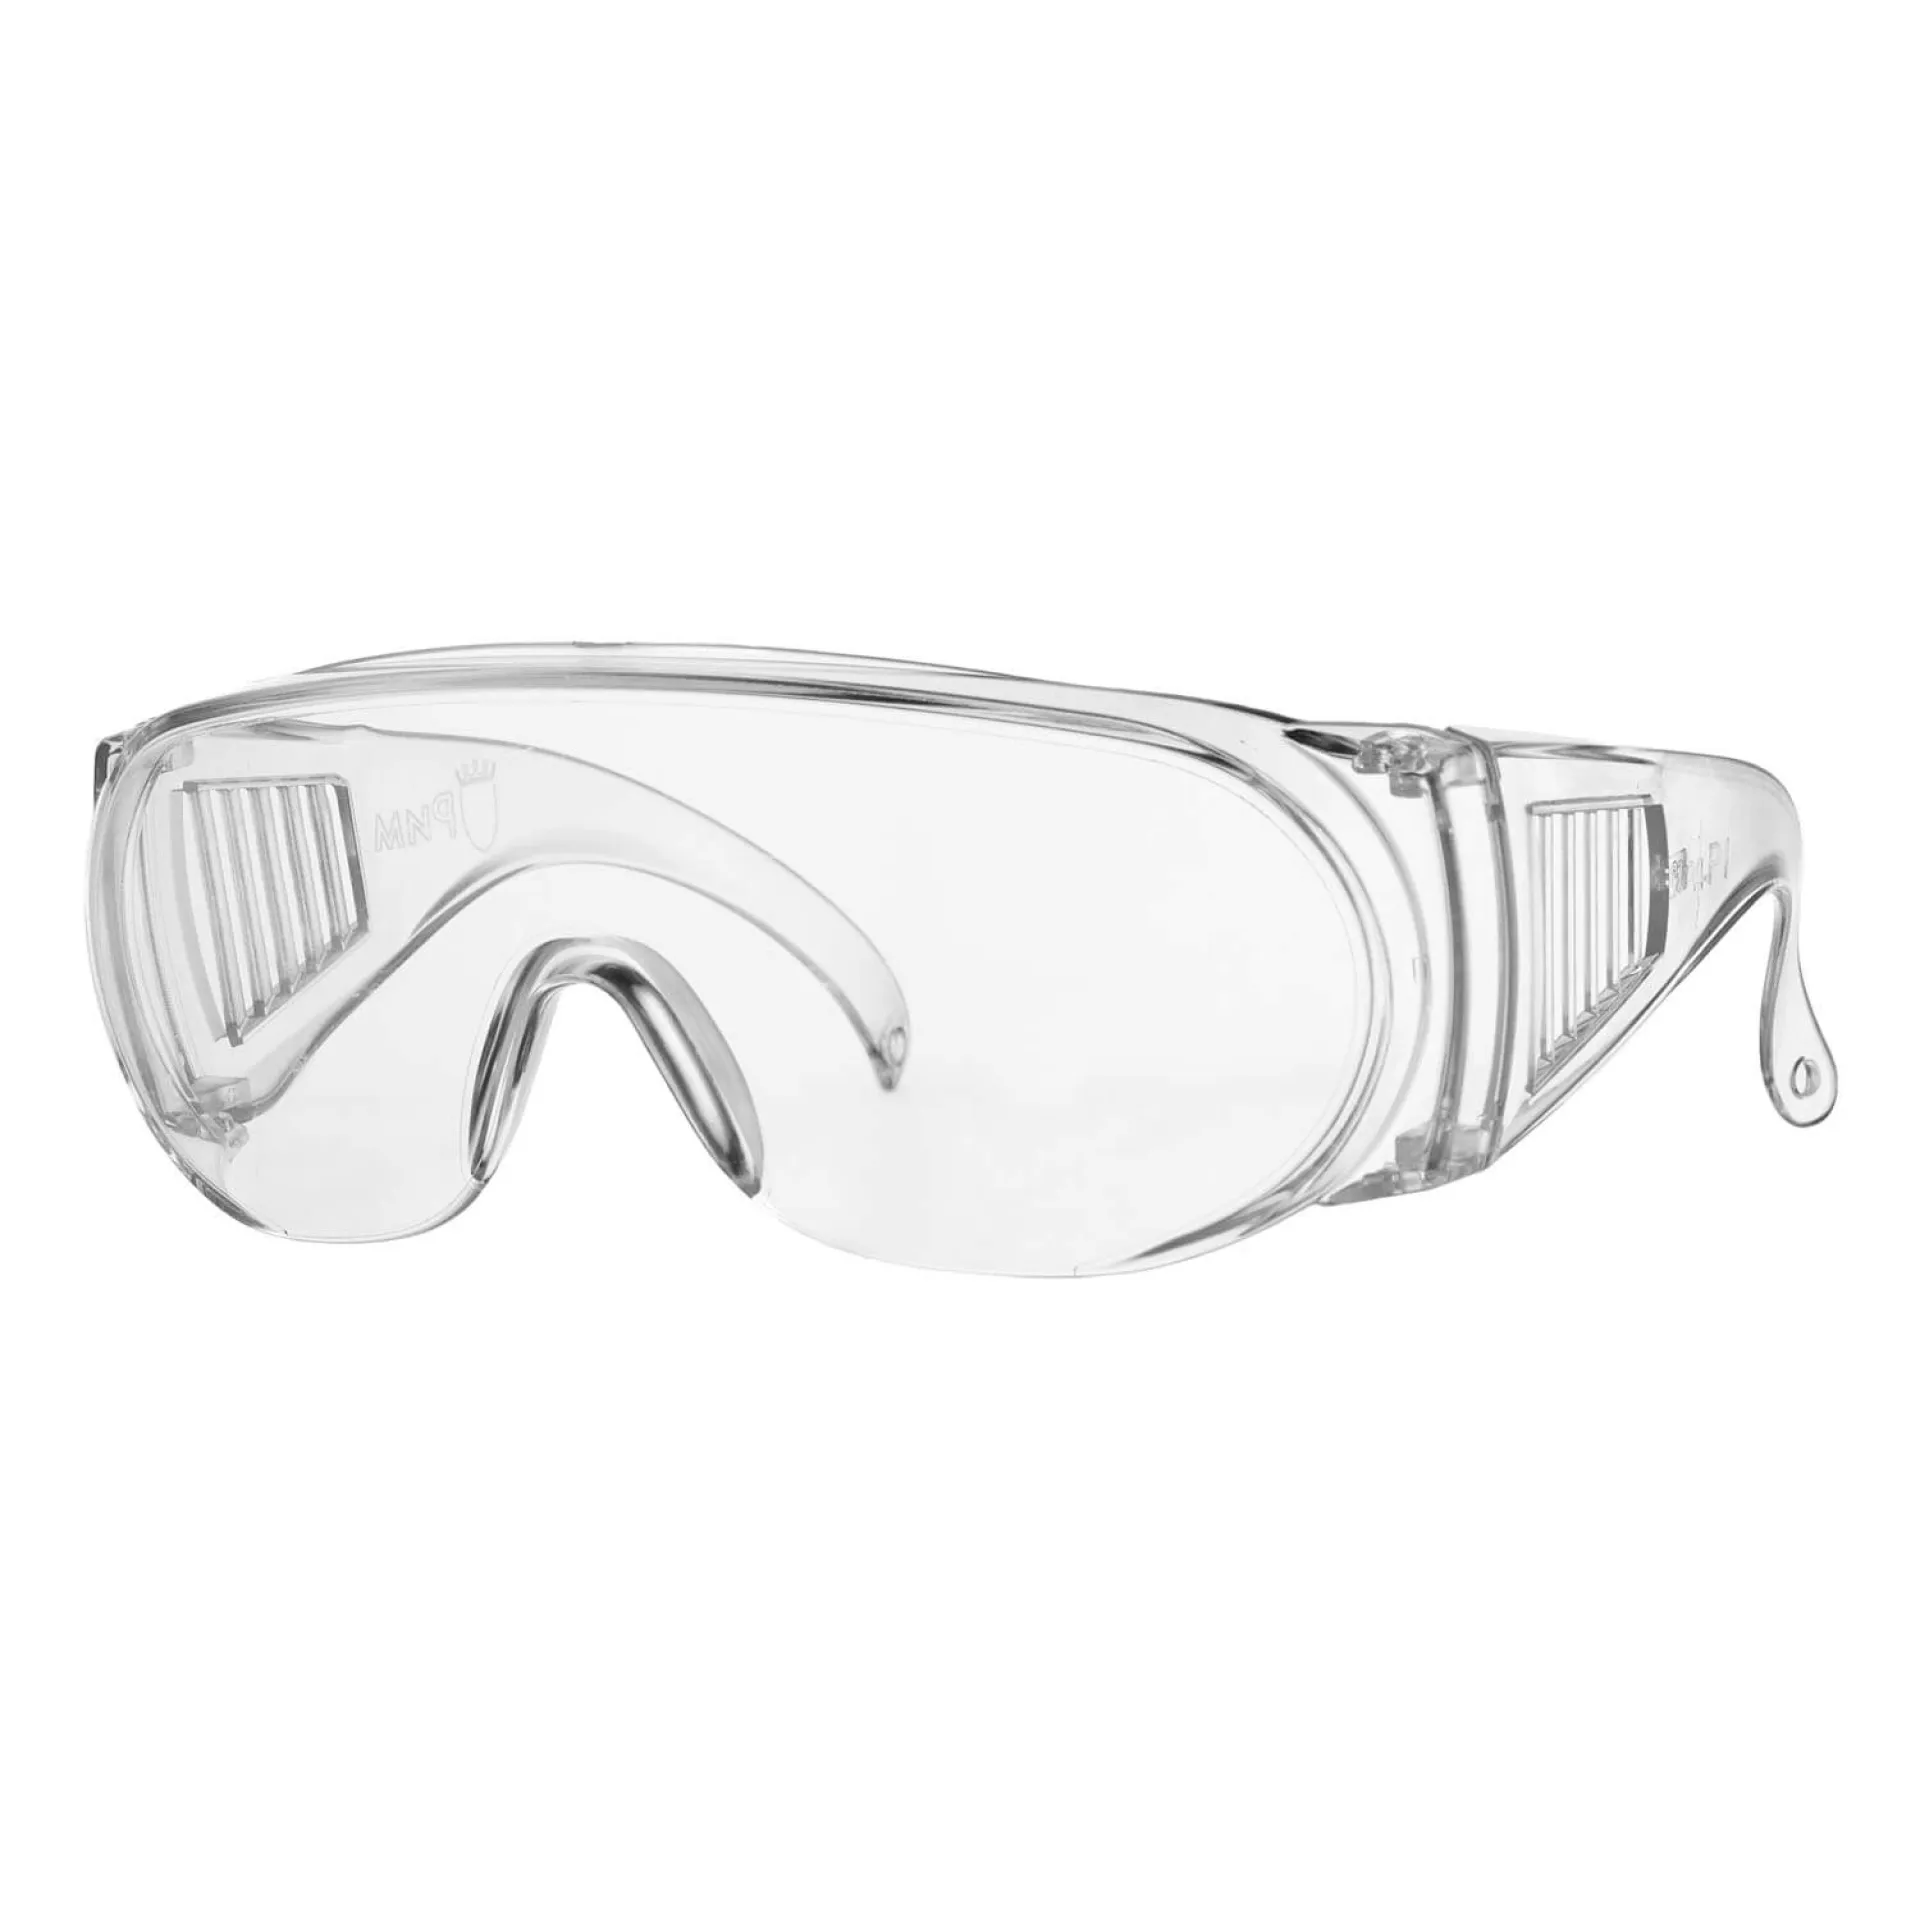 Открытые защитные очки поликарбонат. Защитные очки Fit 12217. 0899102110 Защитные очки Андромеда. Очки защитные открытого типа (для примера-РОСОМЗ 035 ВИЗИОН РС 13511). DEXX очки защитные прозрачные.